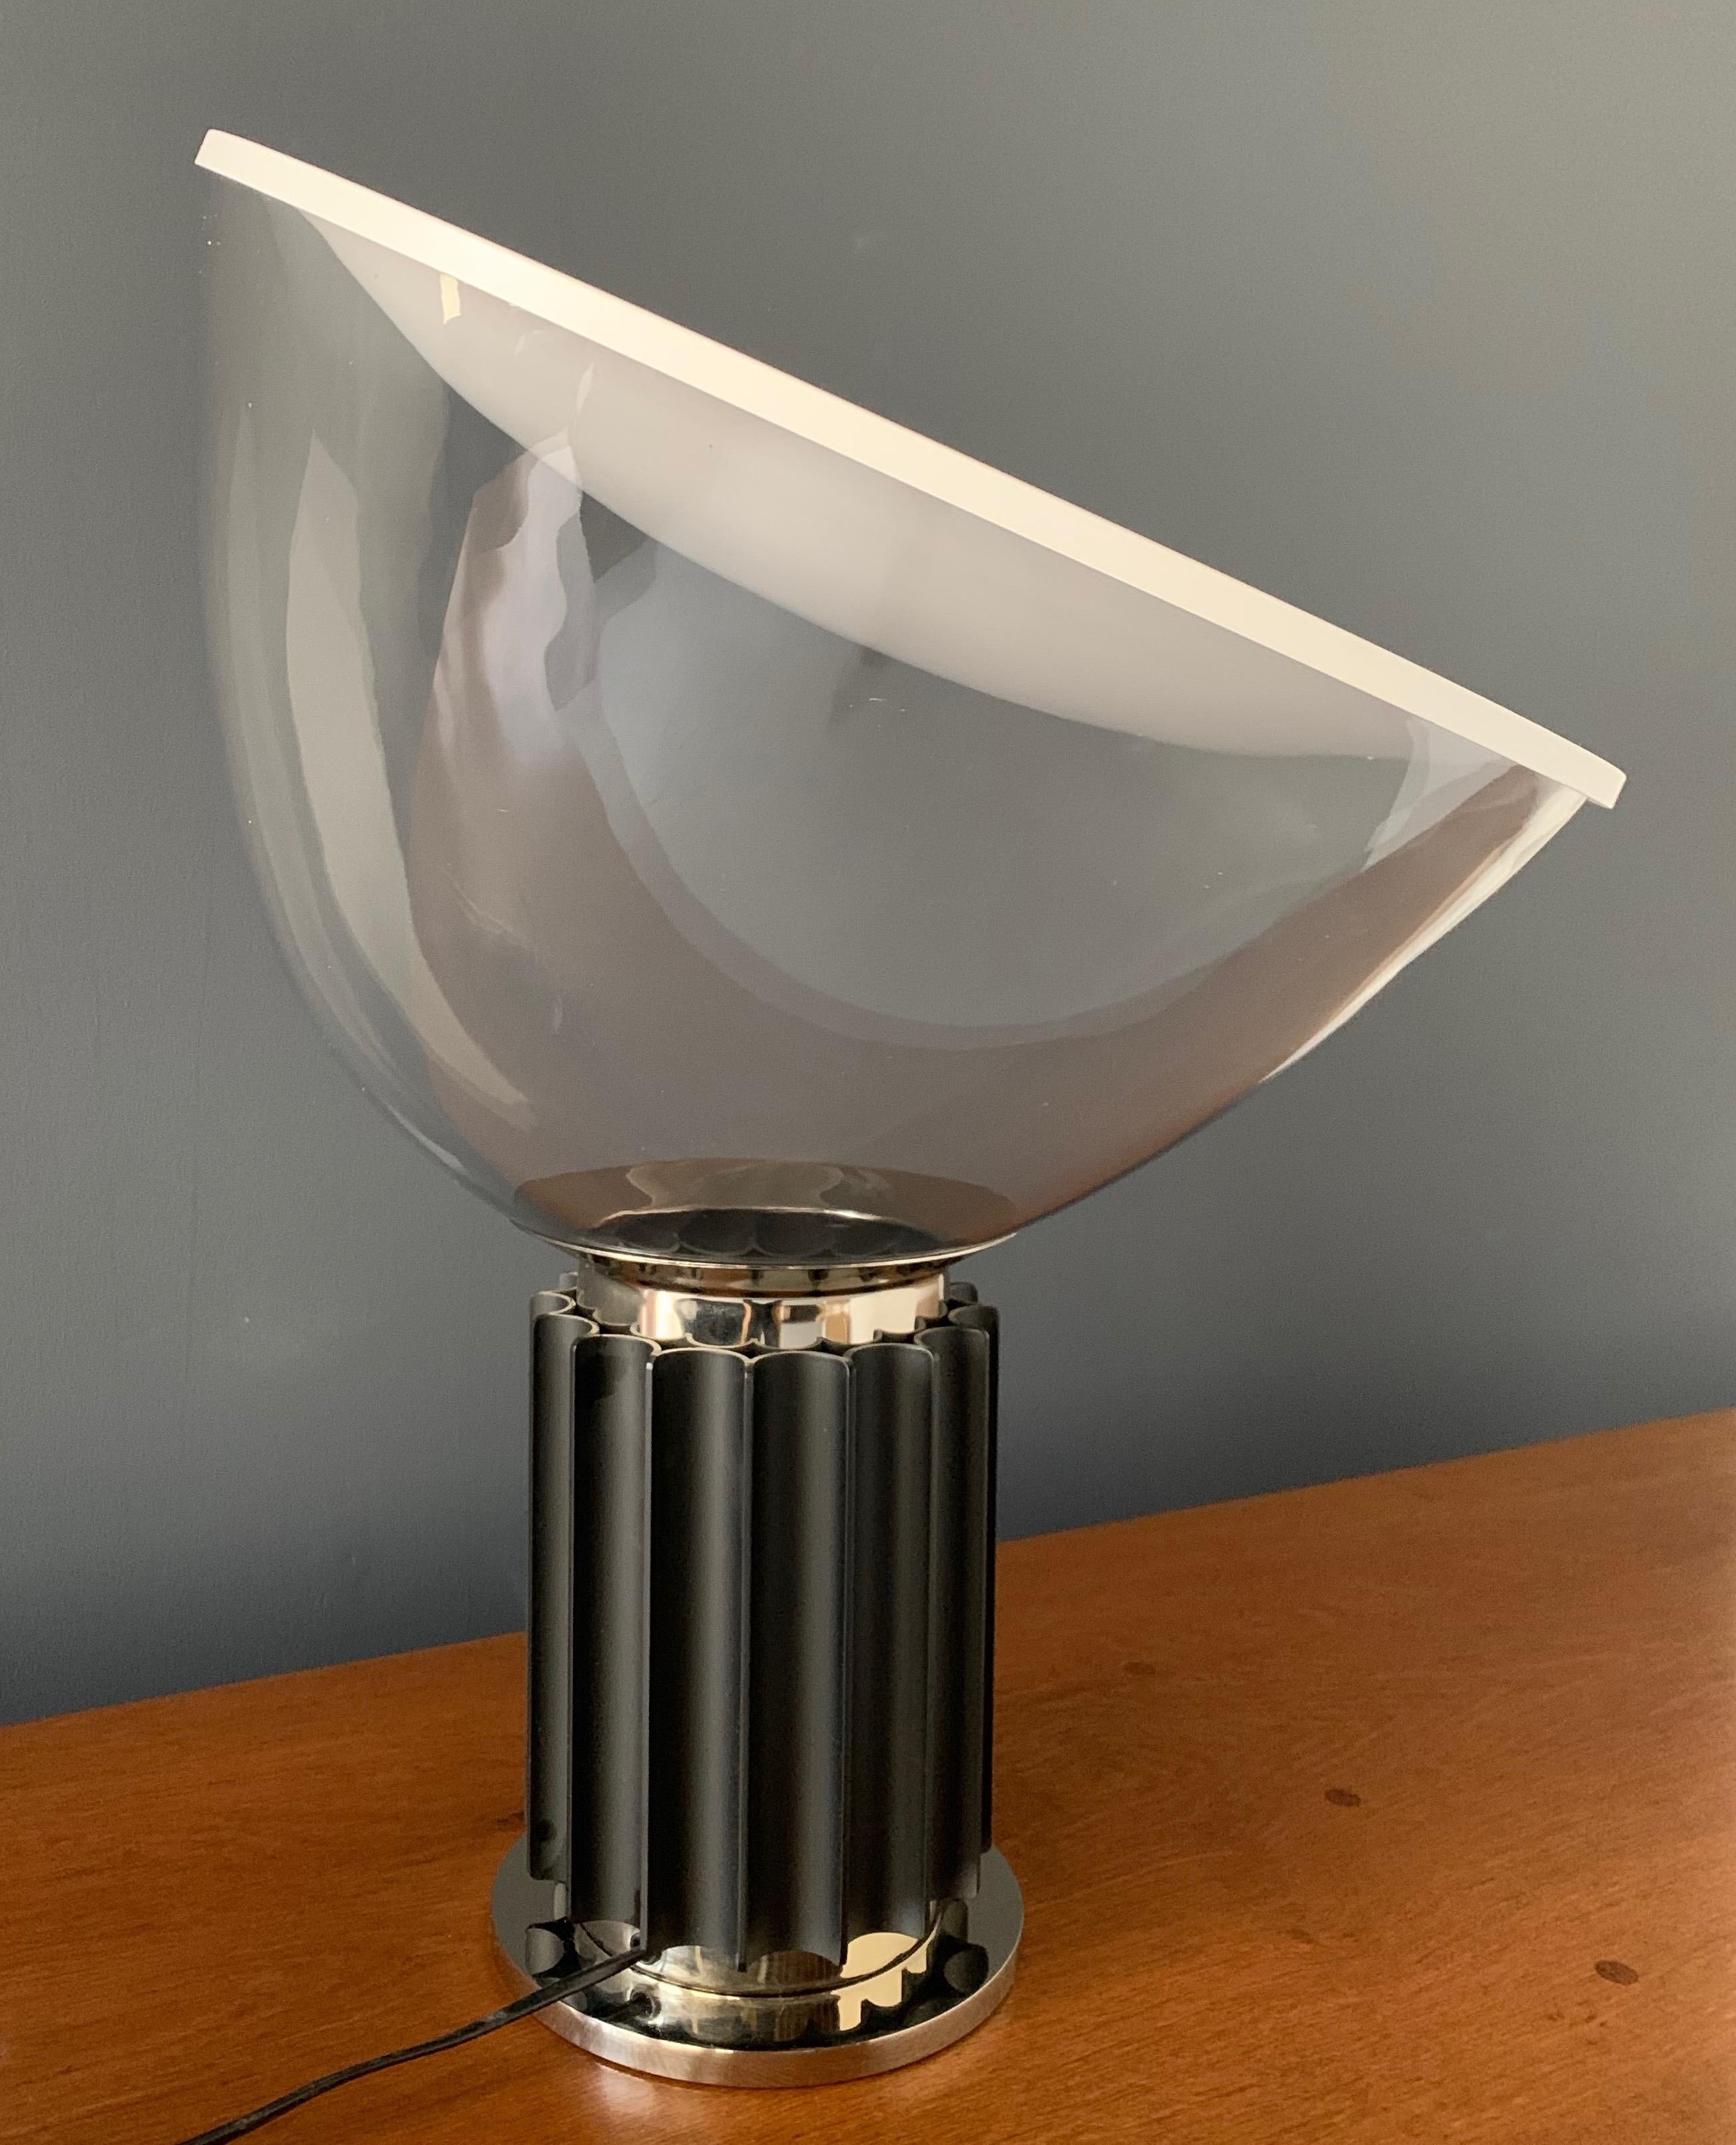 20th Century Taccia Table Lamp Designed by Achille Castiglioni for Flos